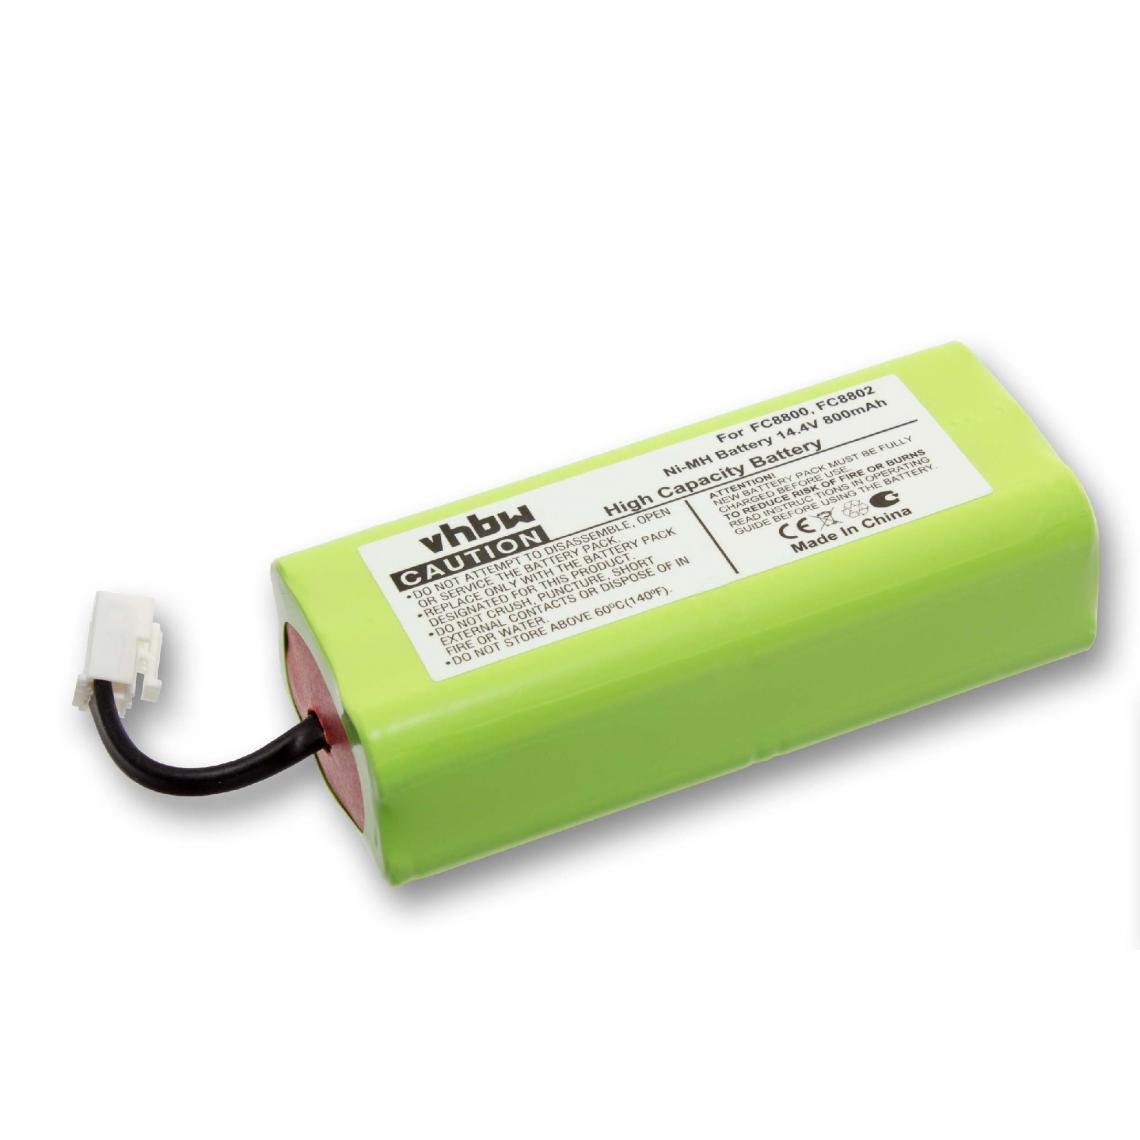 Vhbw - vhbw Batterie compatible avec Philips FC8801 aspirateur, robot électroménager (800mAh, 14,4V, NiMH) - Accessoire entretien des sols